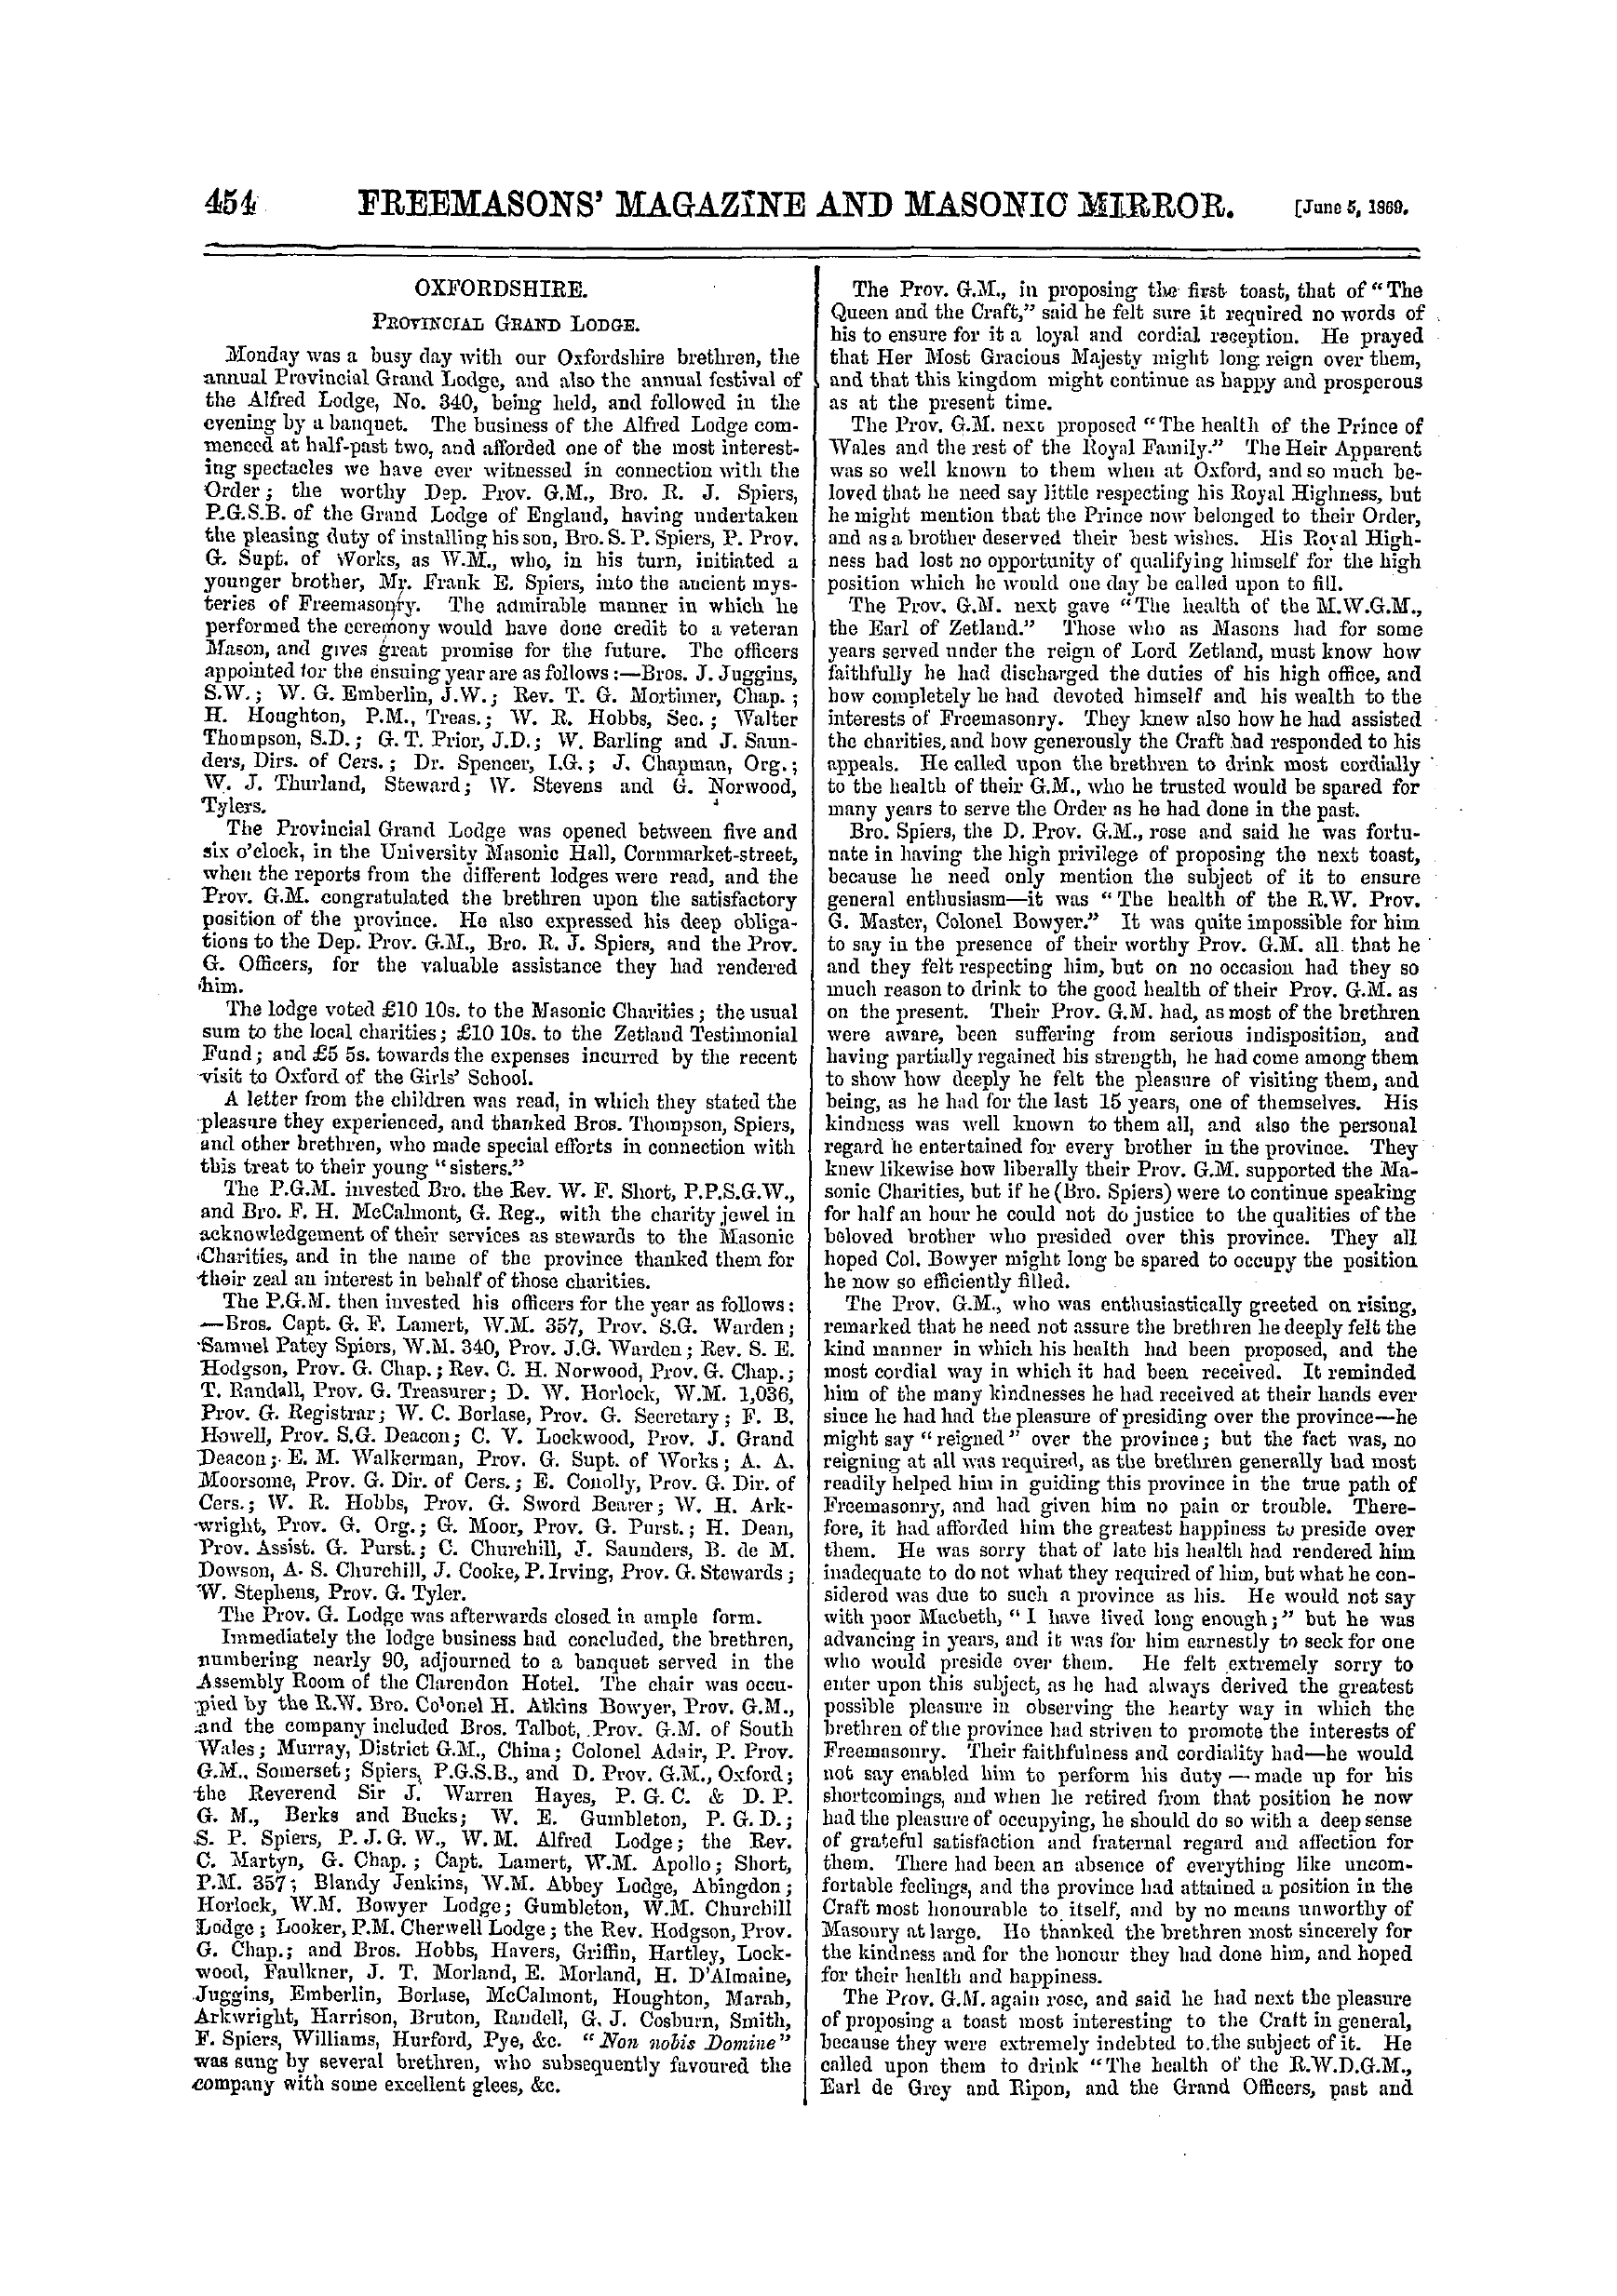 The Freemasons' Monthly Magazine: 1869-06-05 - Oxfordshire.